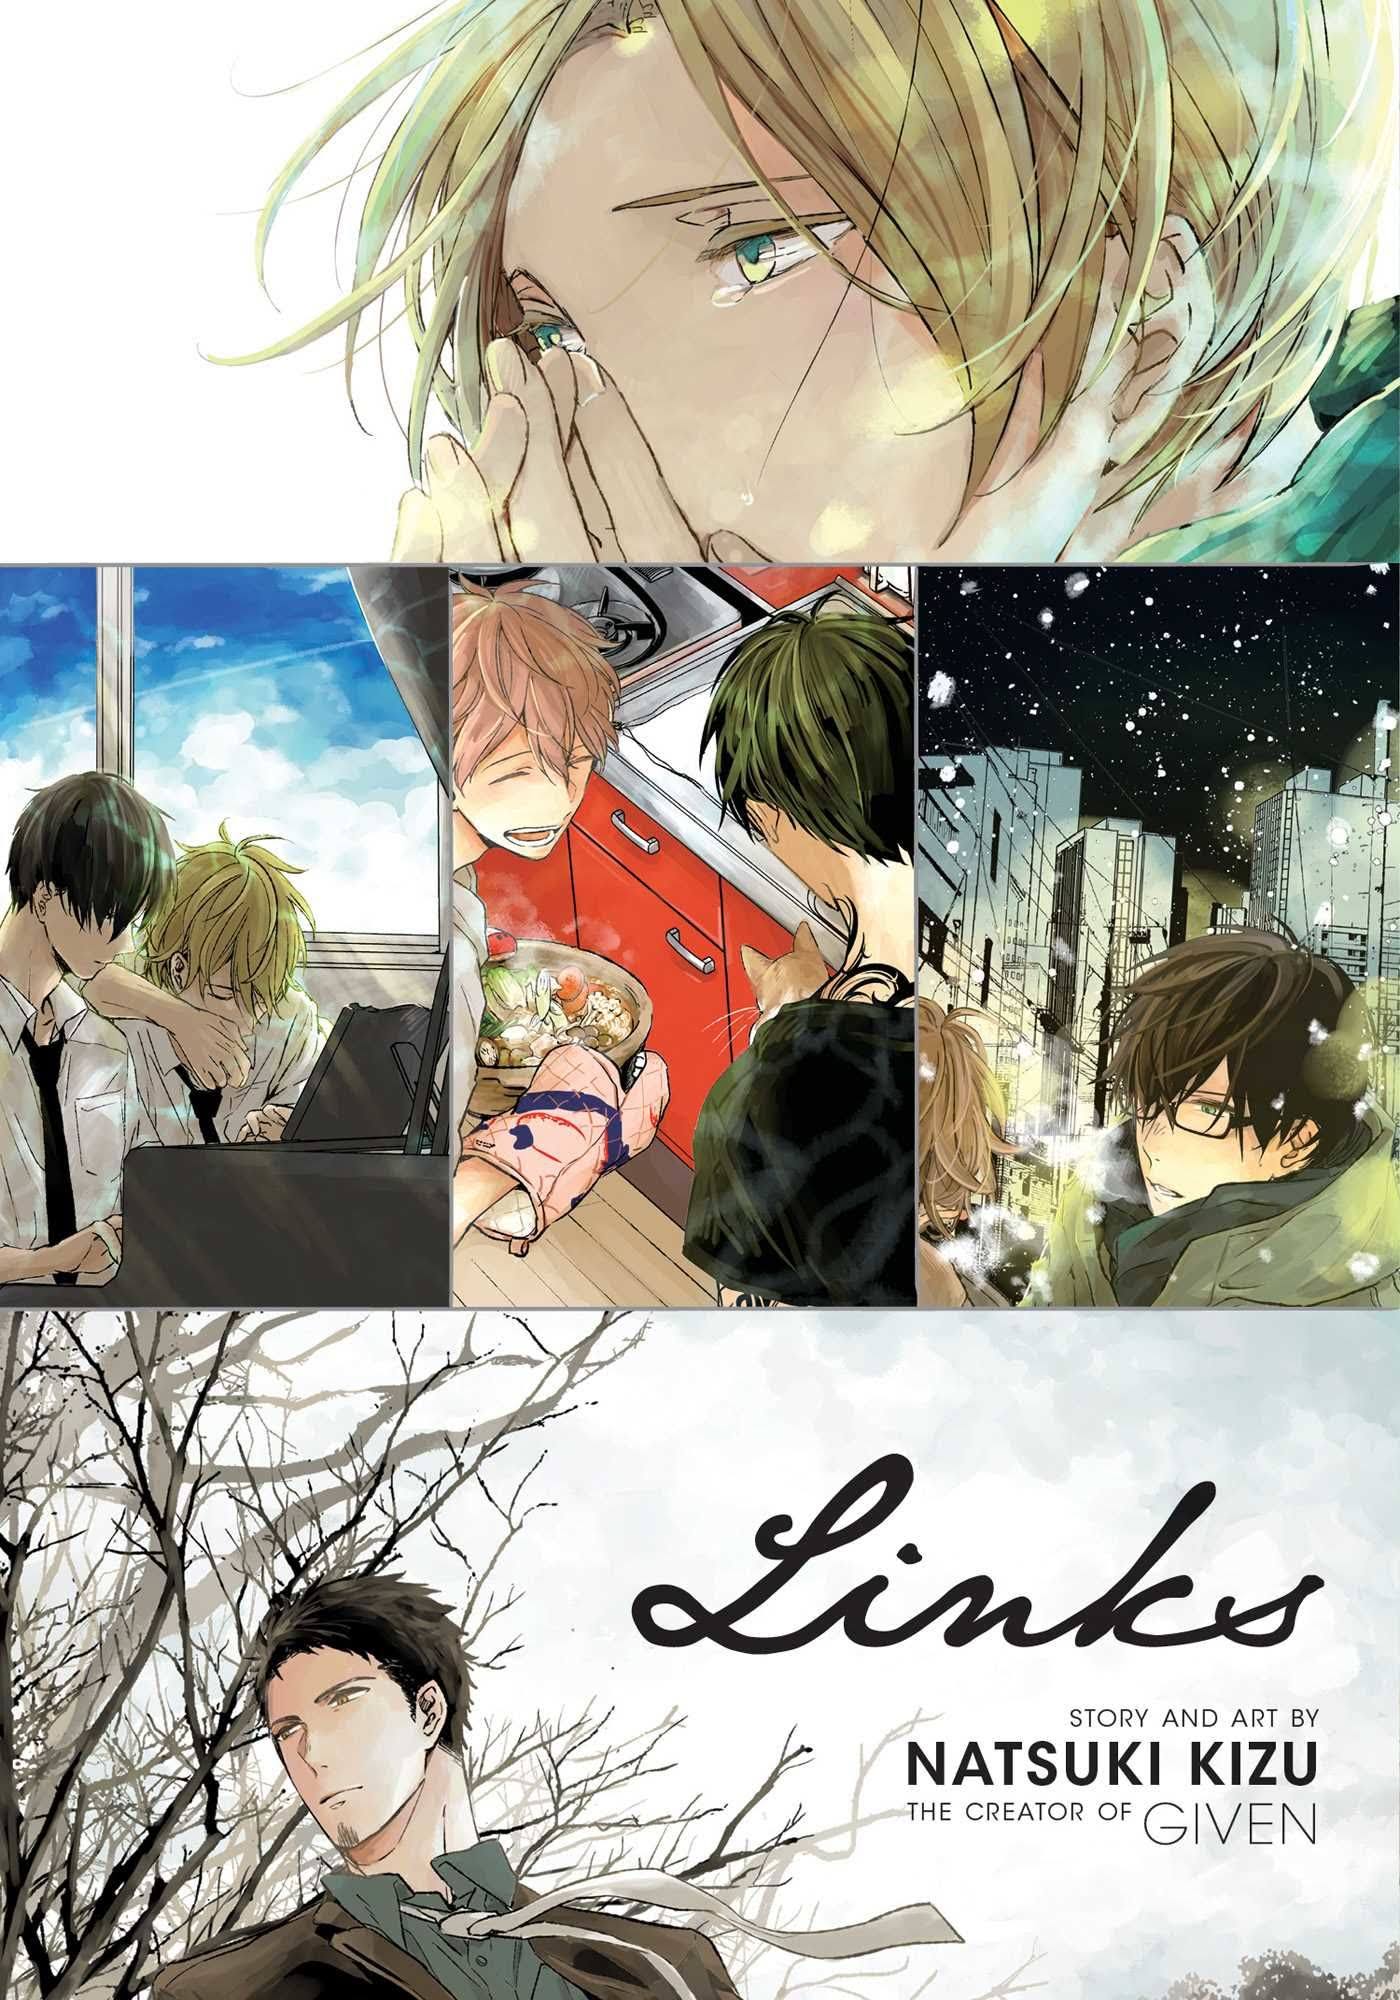 Links by Natsuki Kizu